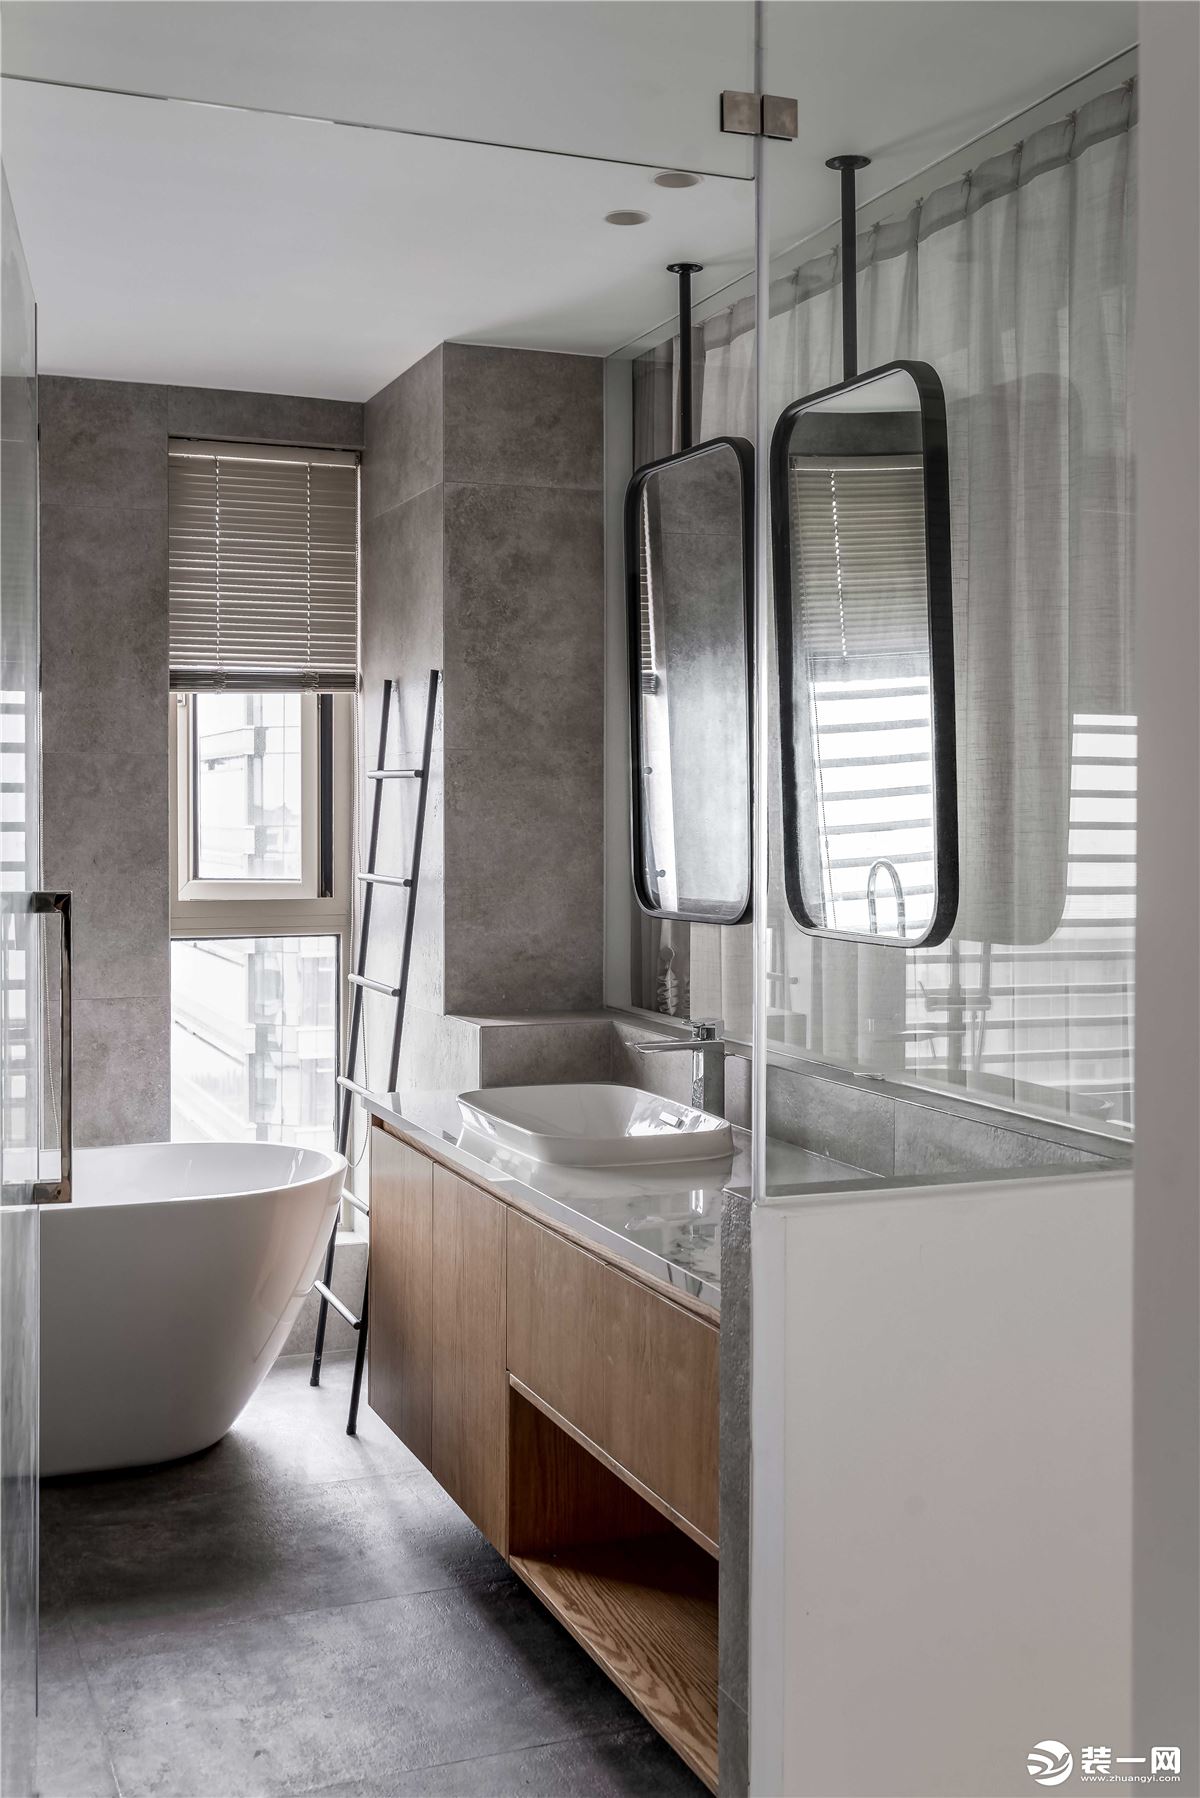 主卫是双镜的设计，在靠窗的位置放一个浴缸，挂上百叶帘，保证卫浴的私密性。